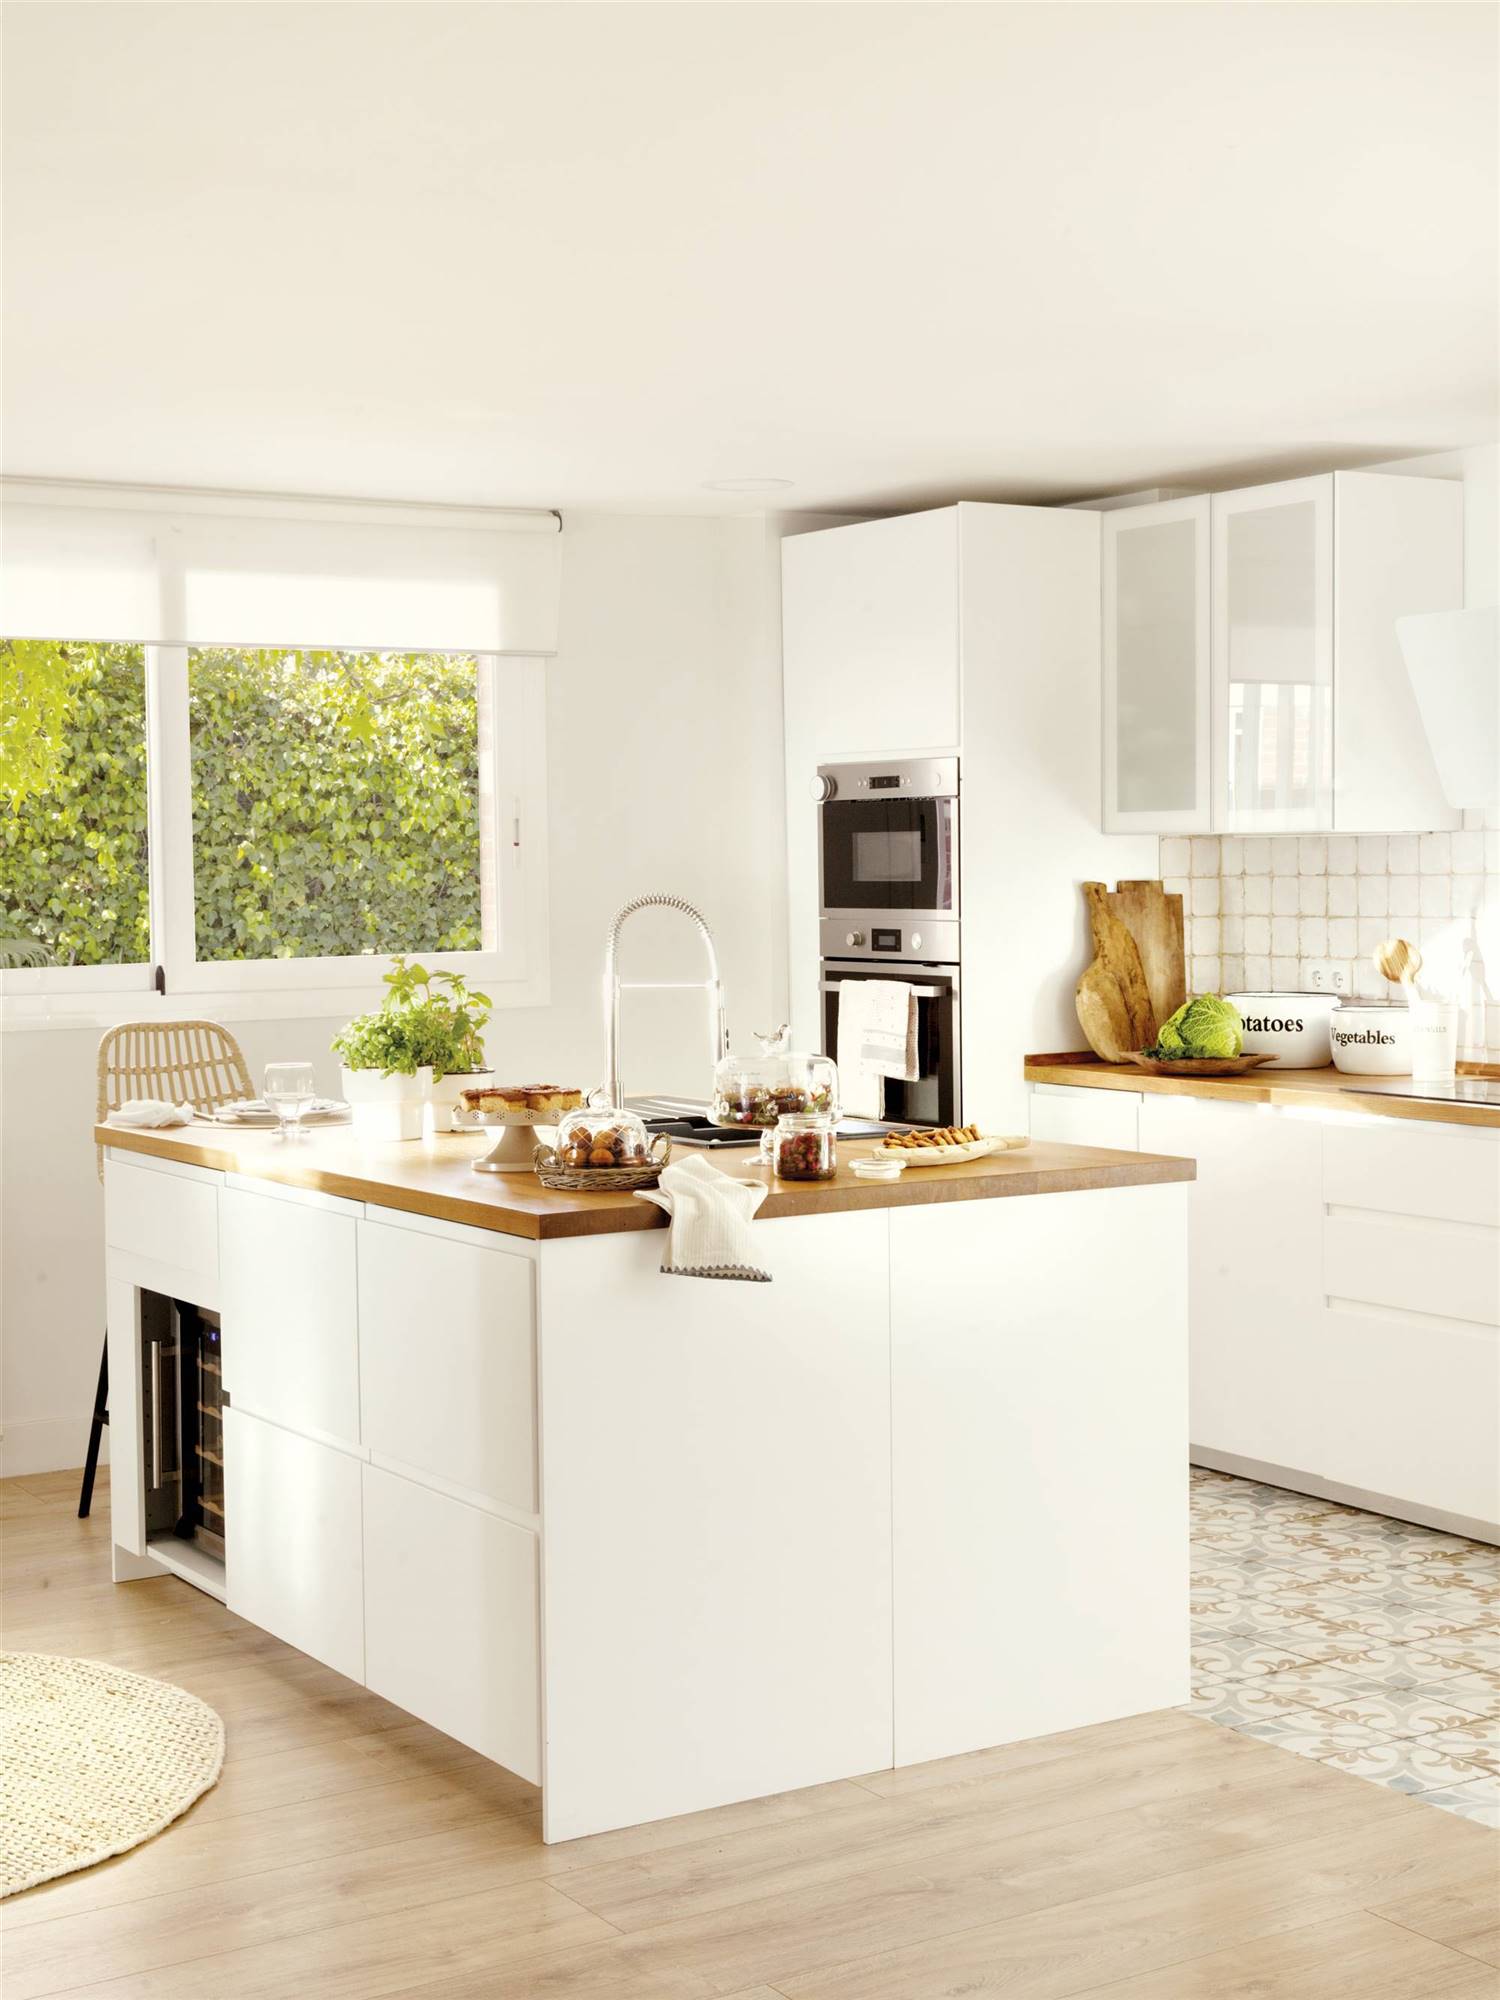 Cómo decorar una cocina moderna blanca y abierta